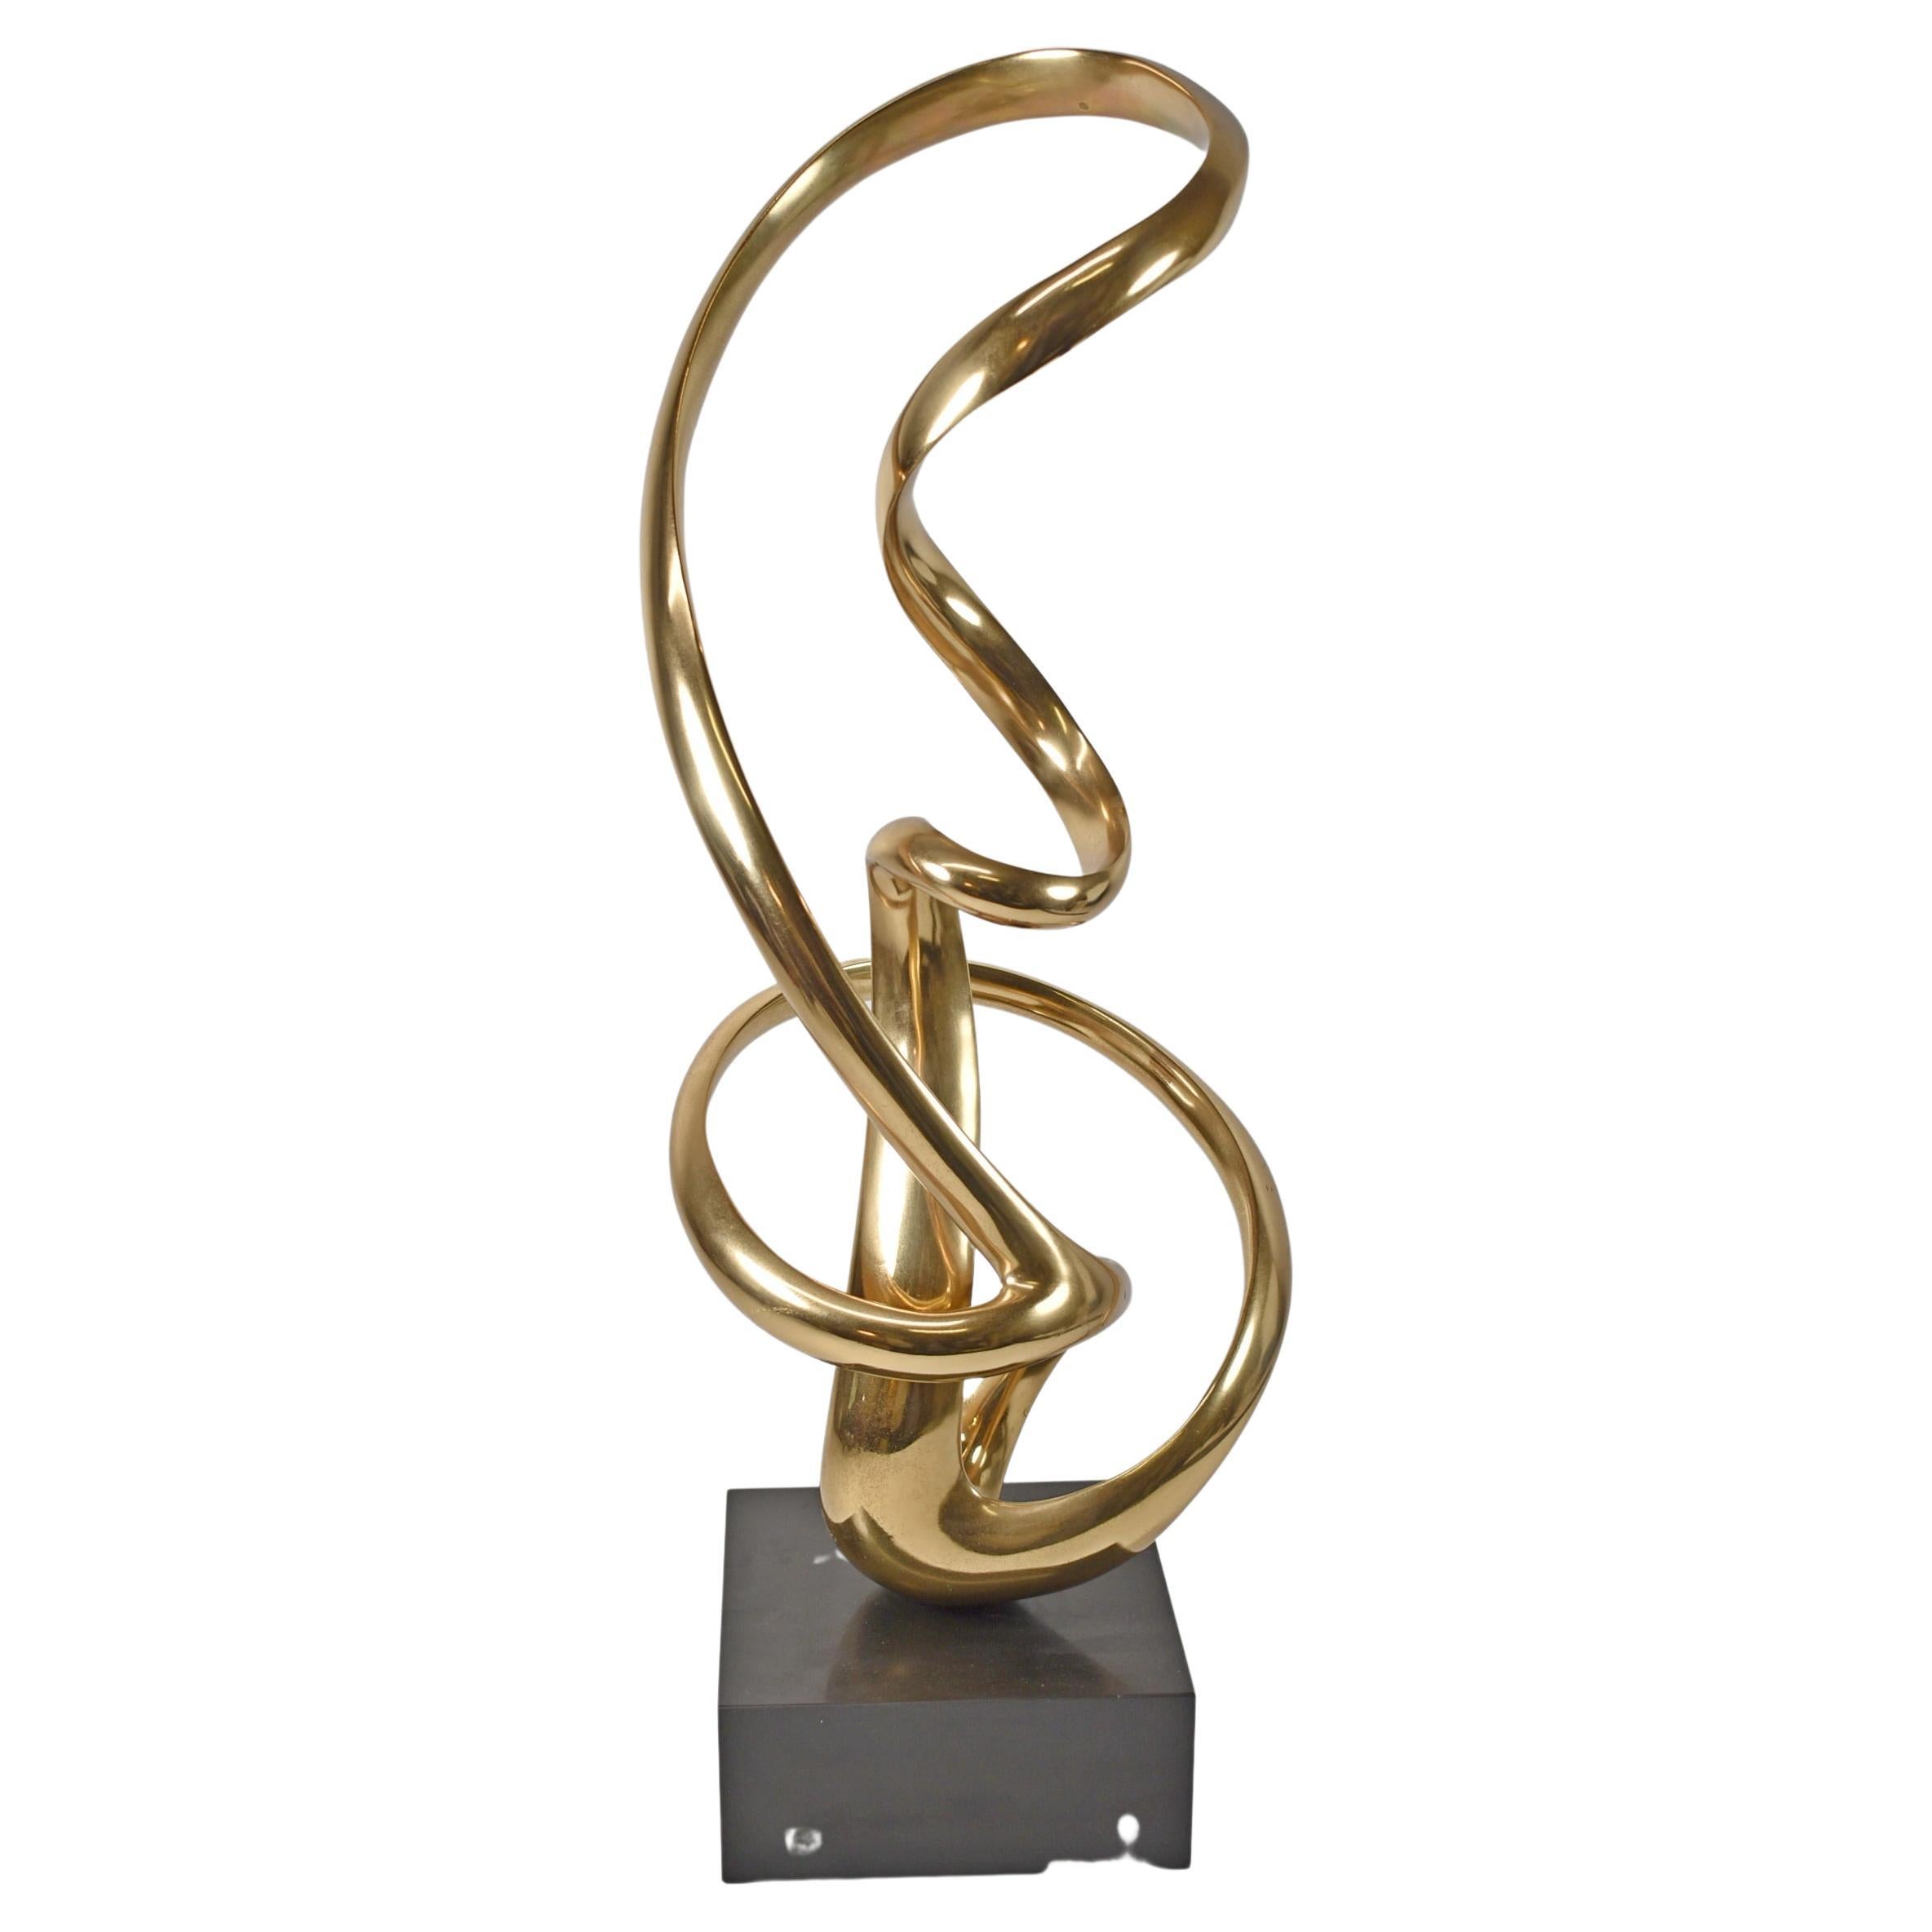 Sculpture biomorphique en bronze d'Antonio Grediaga Kieff